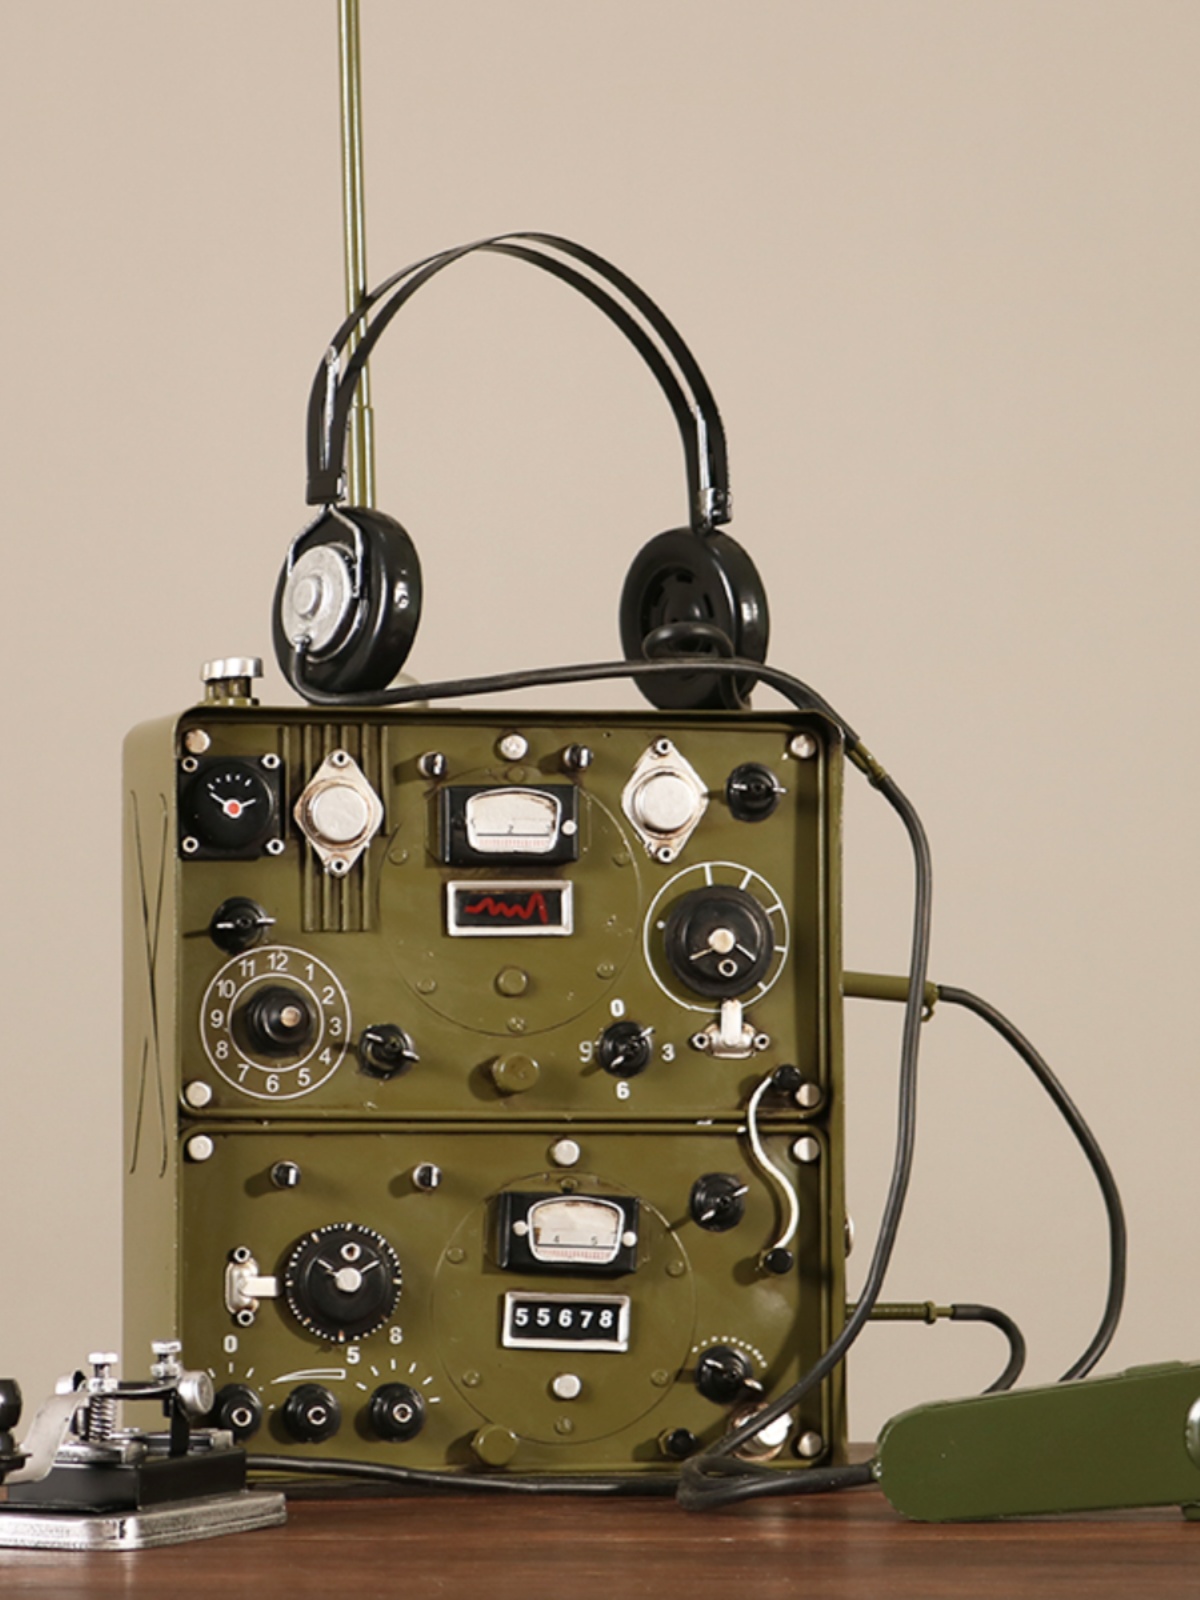 复古老式电报机电台发报机模型怀旧老物件民国抗战道具装饰品摆件